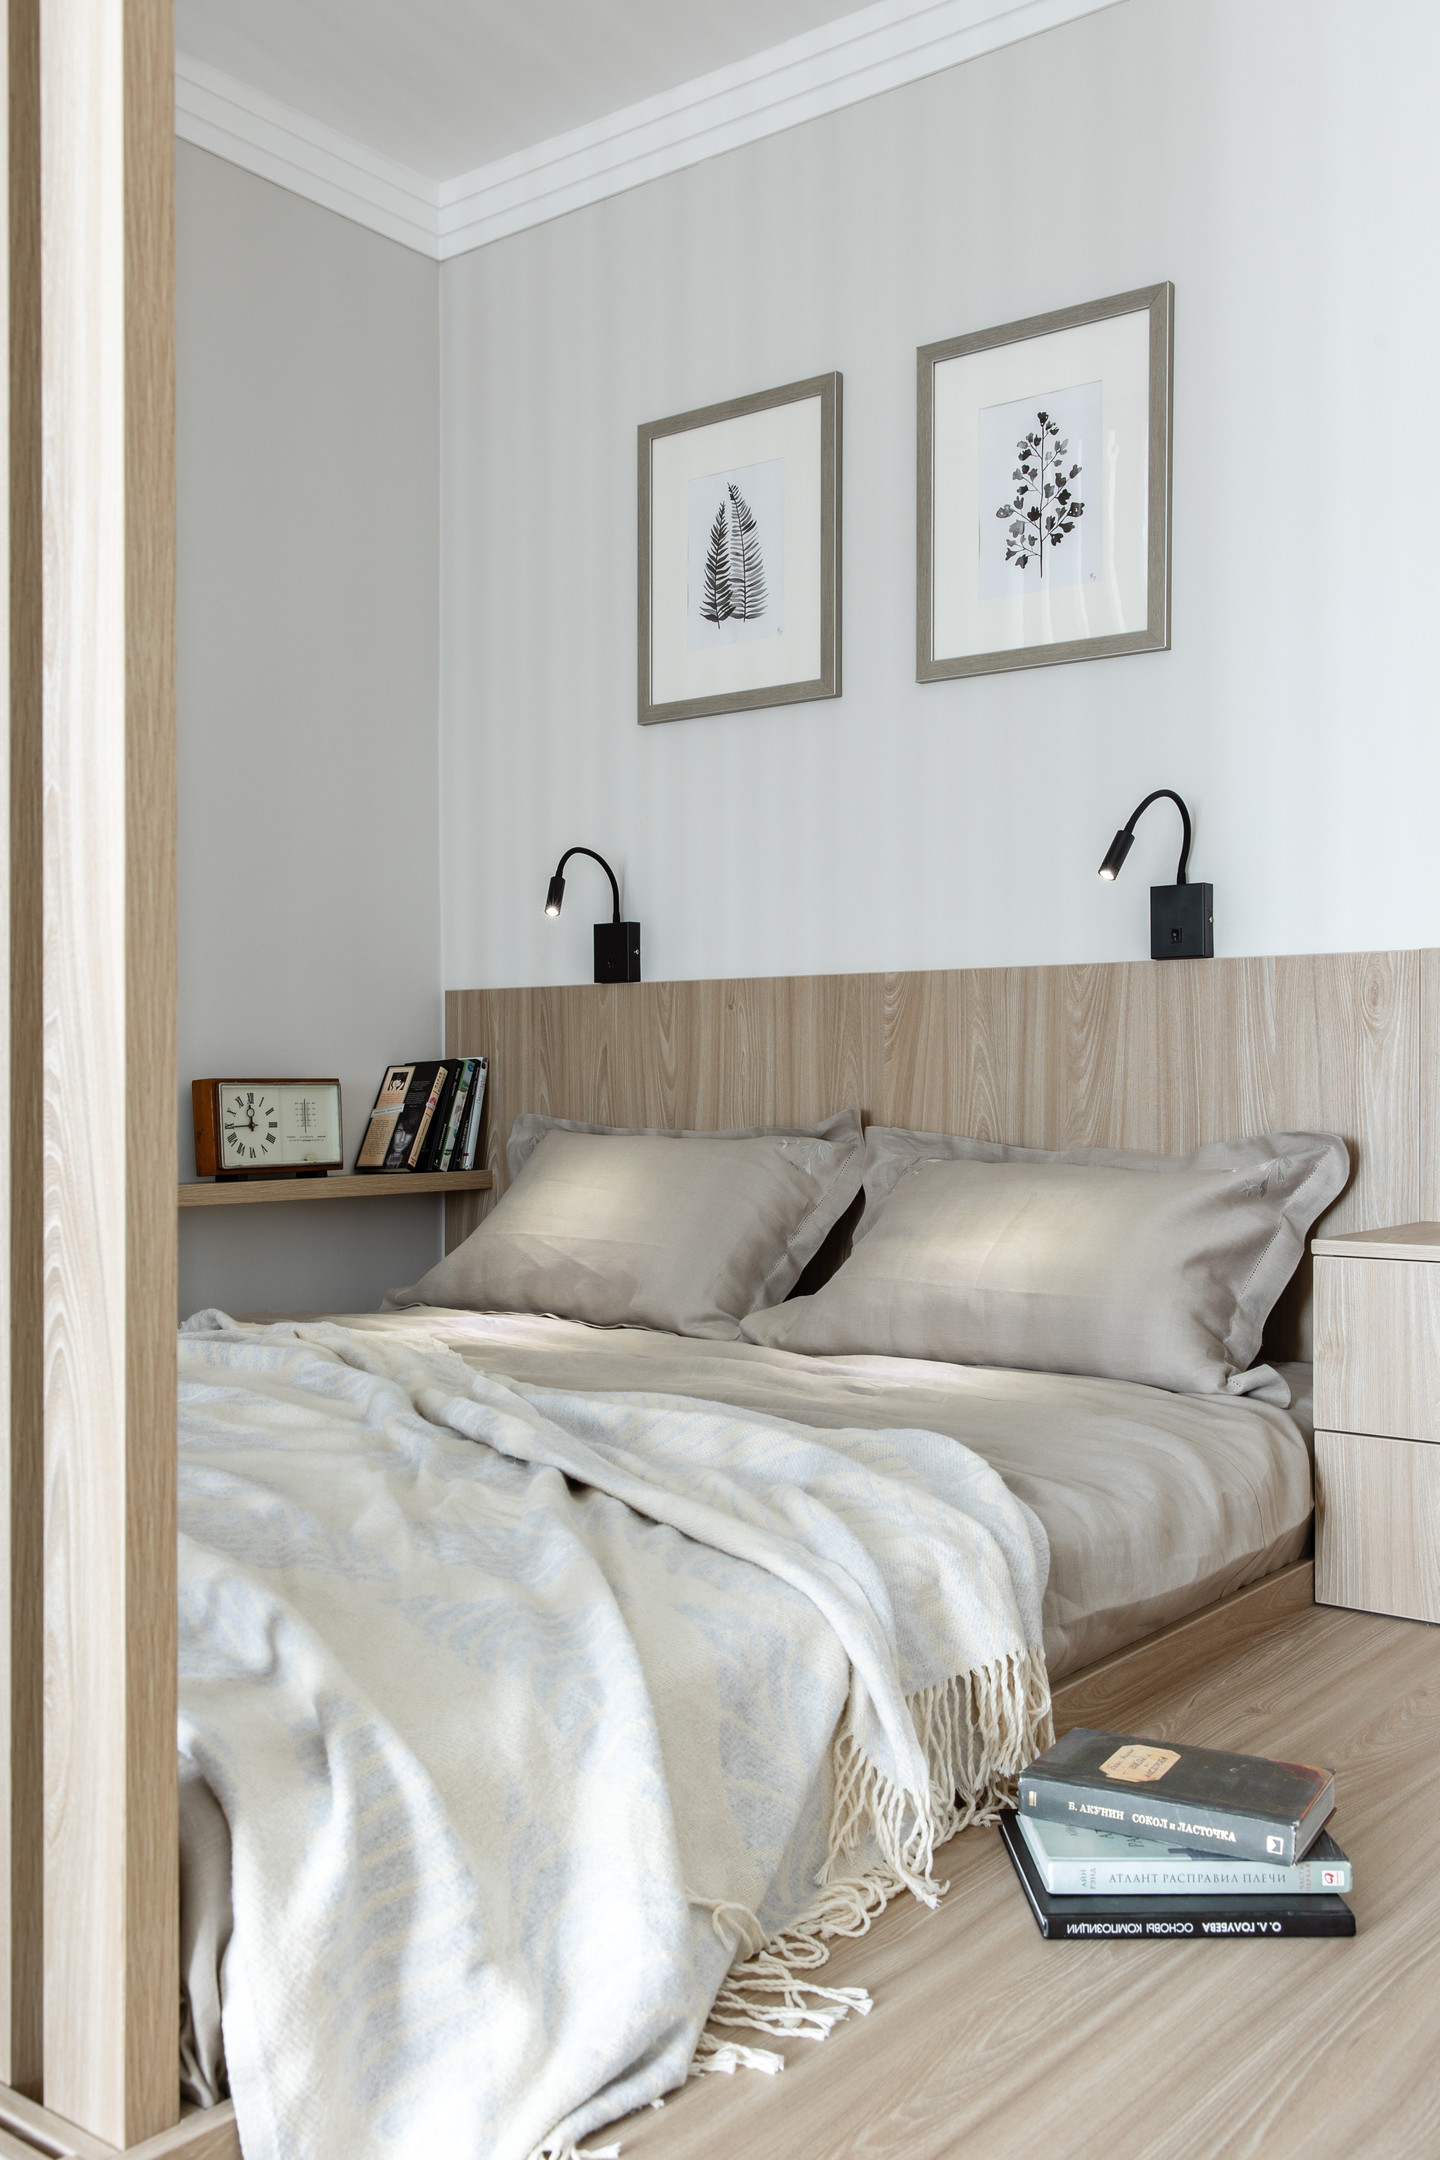 Phòng ngủ thiết kế tối giản với vật liệu gỗ “thống trị” khu vực đầu giường, vách ngăn, sàn nhà và cả táp đầu giường đồng màu tươi sáng. Giải pháp sử dụng lam gỗ vừa tạo sự riêng tư nhưng vẫn đón nắng và gió cho căn phòng được thông thoáng.